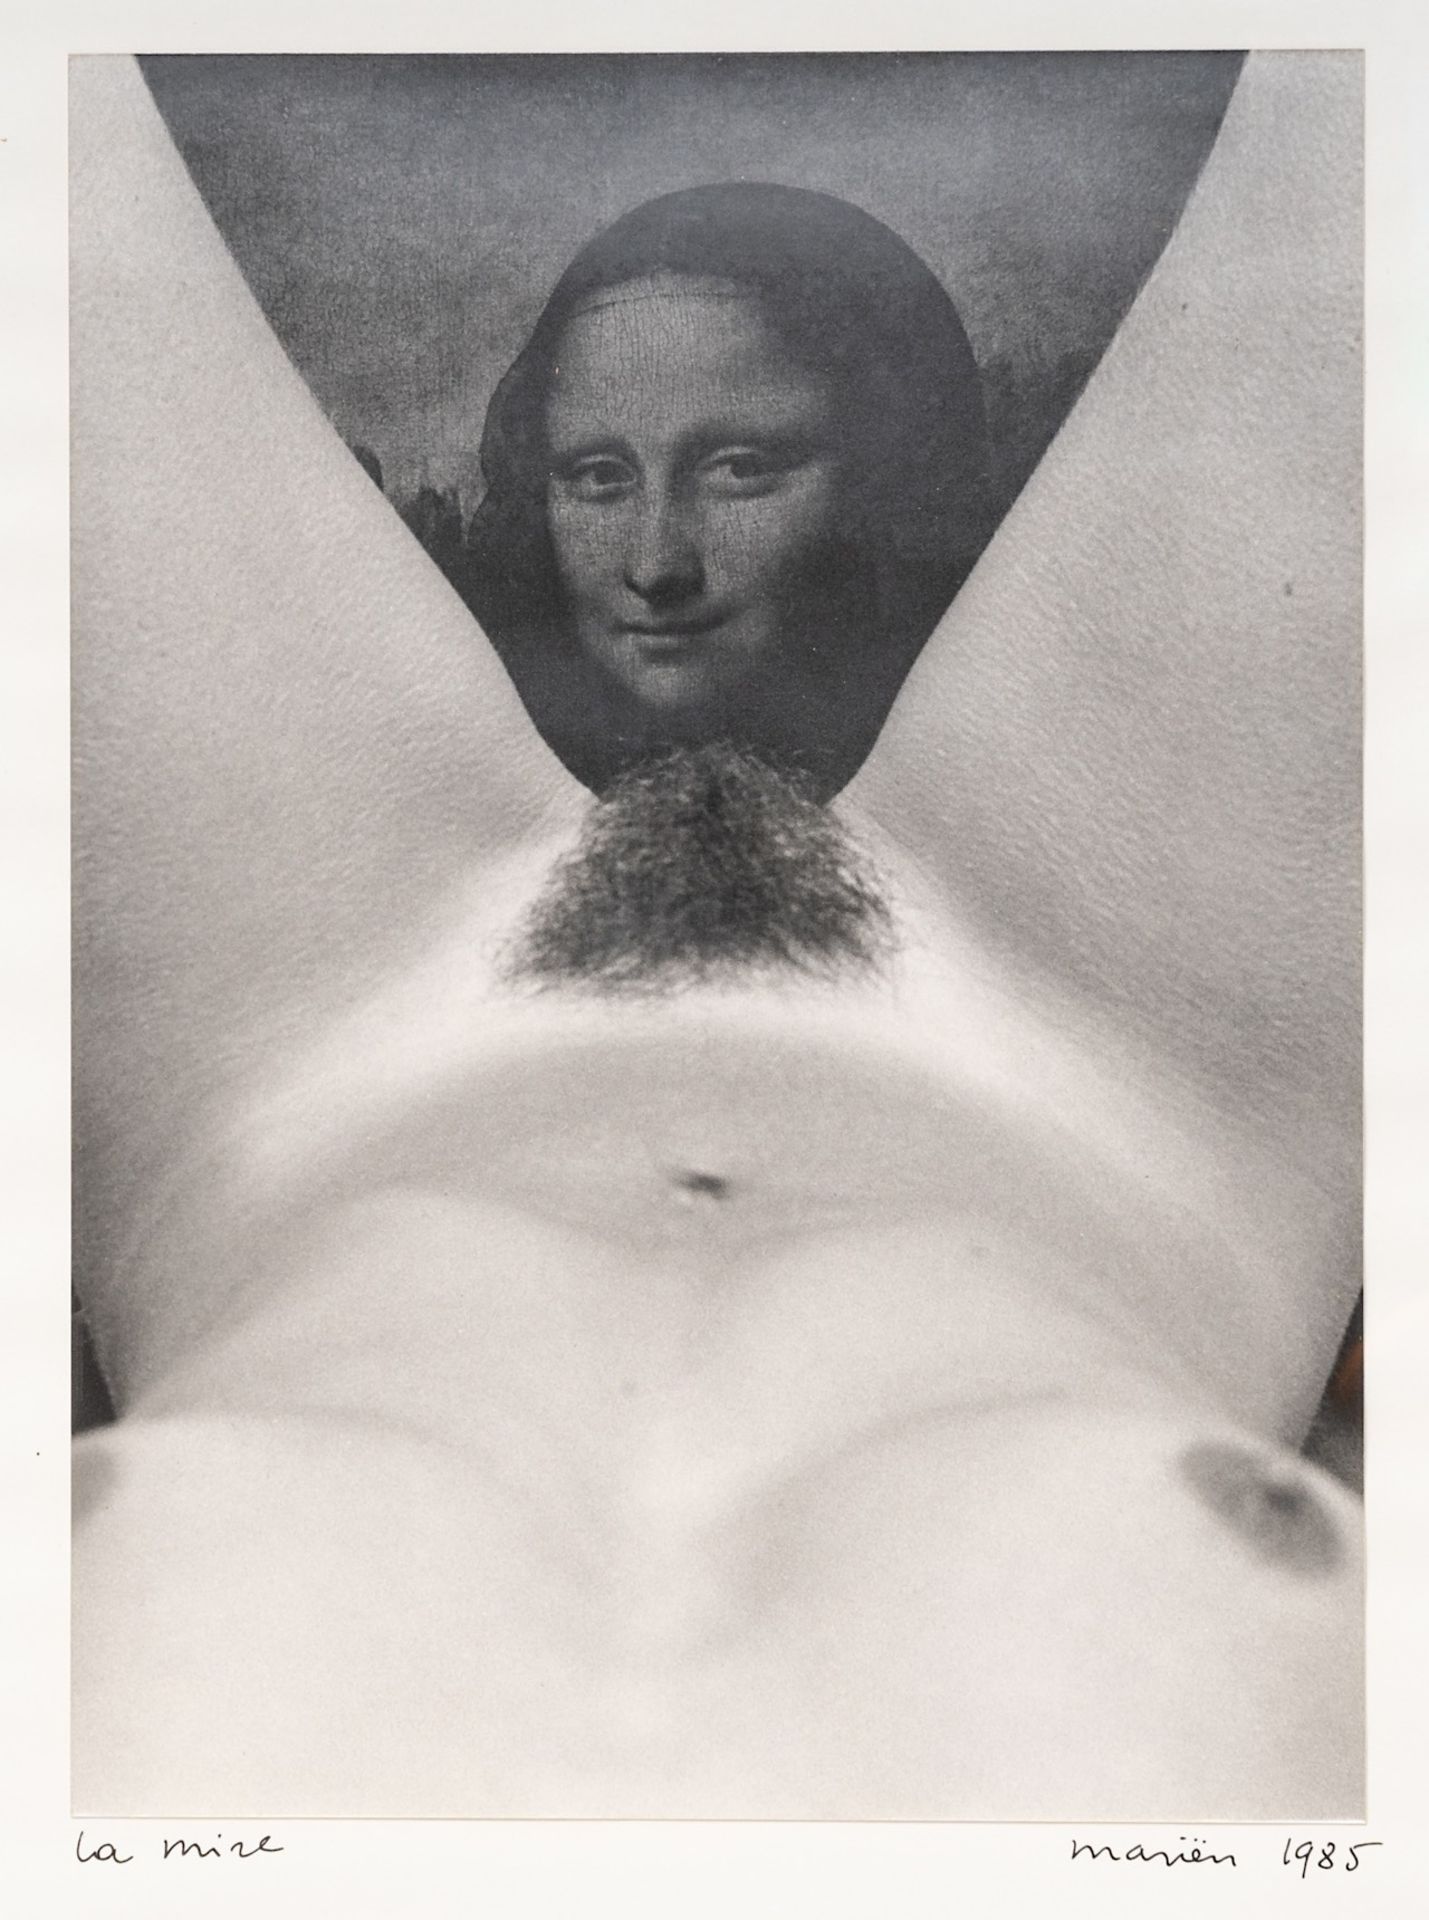 Marcel Marien (1920-1993), 'La Mire', 1985, gelatine silver print 24 x 18 cm. (9.4 x 7.0 in.), Frame